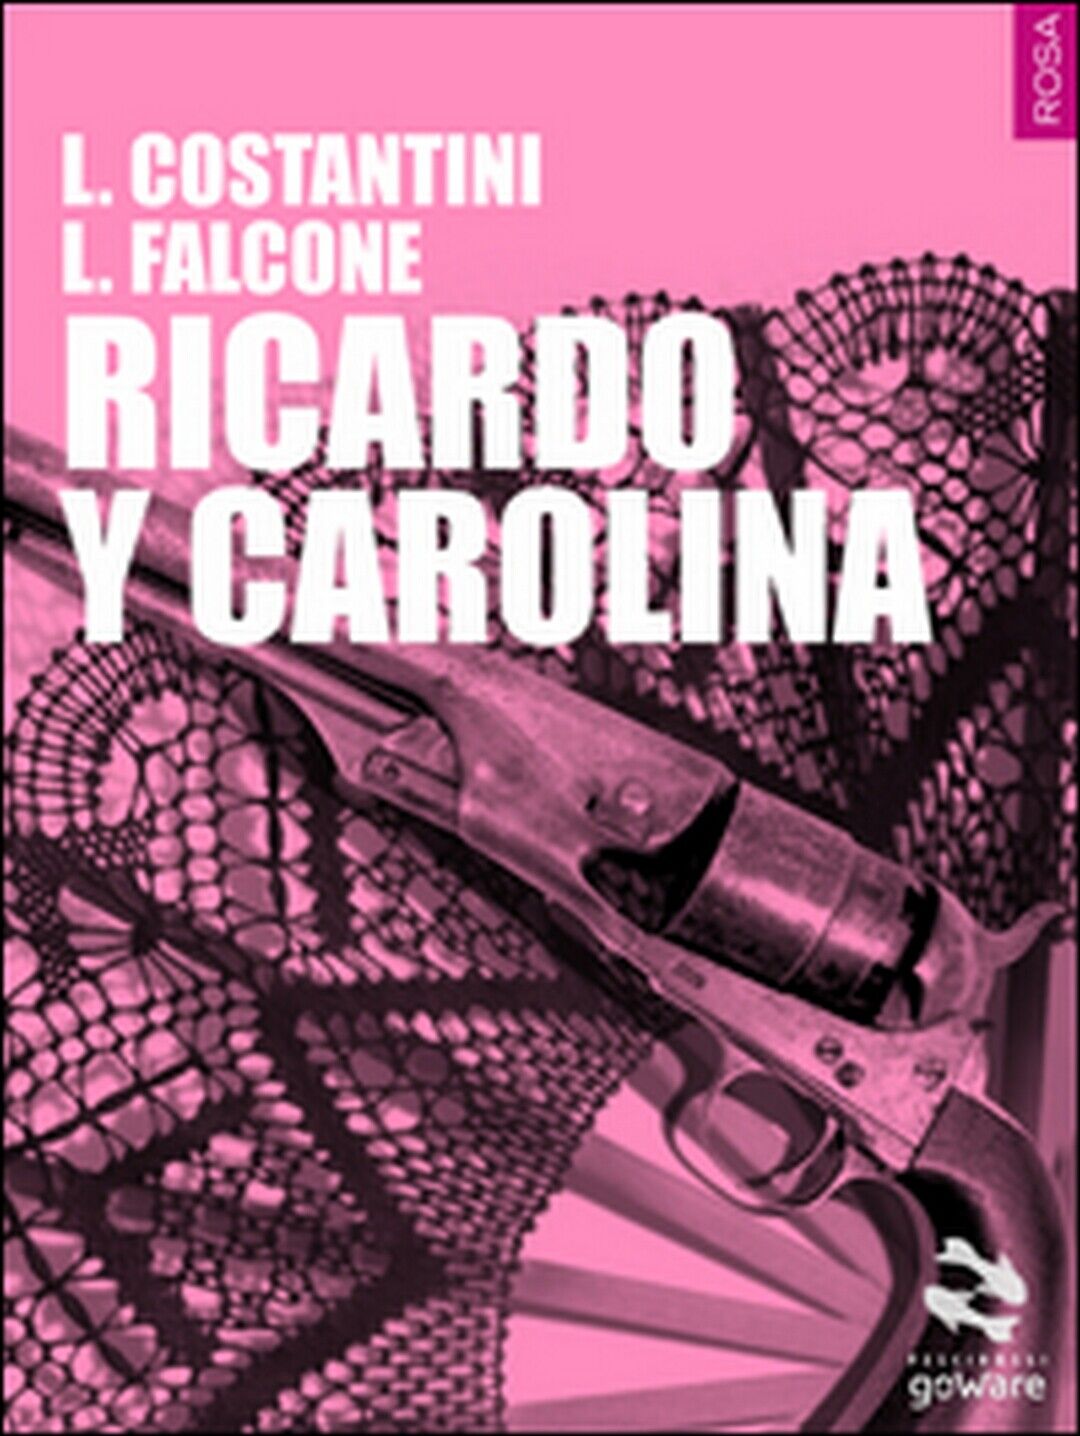 Ricardo y Carolina  di Laura Costantini, Loredana Falcone,  2015,  Goware libro usato